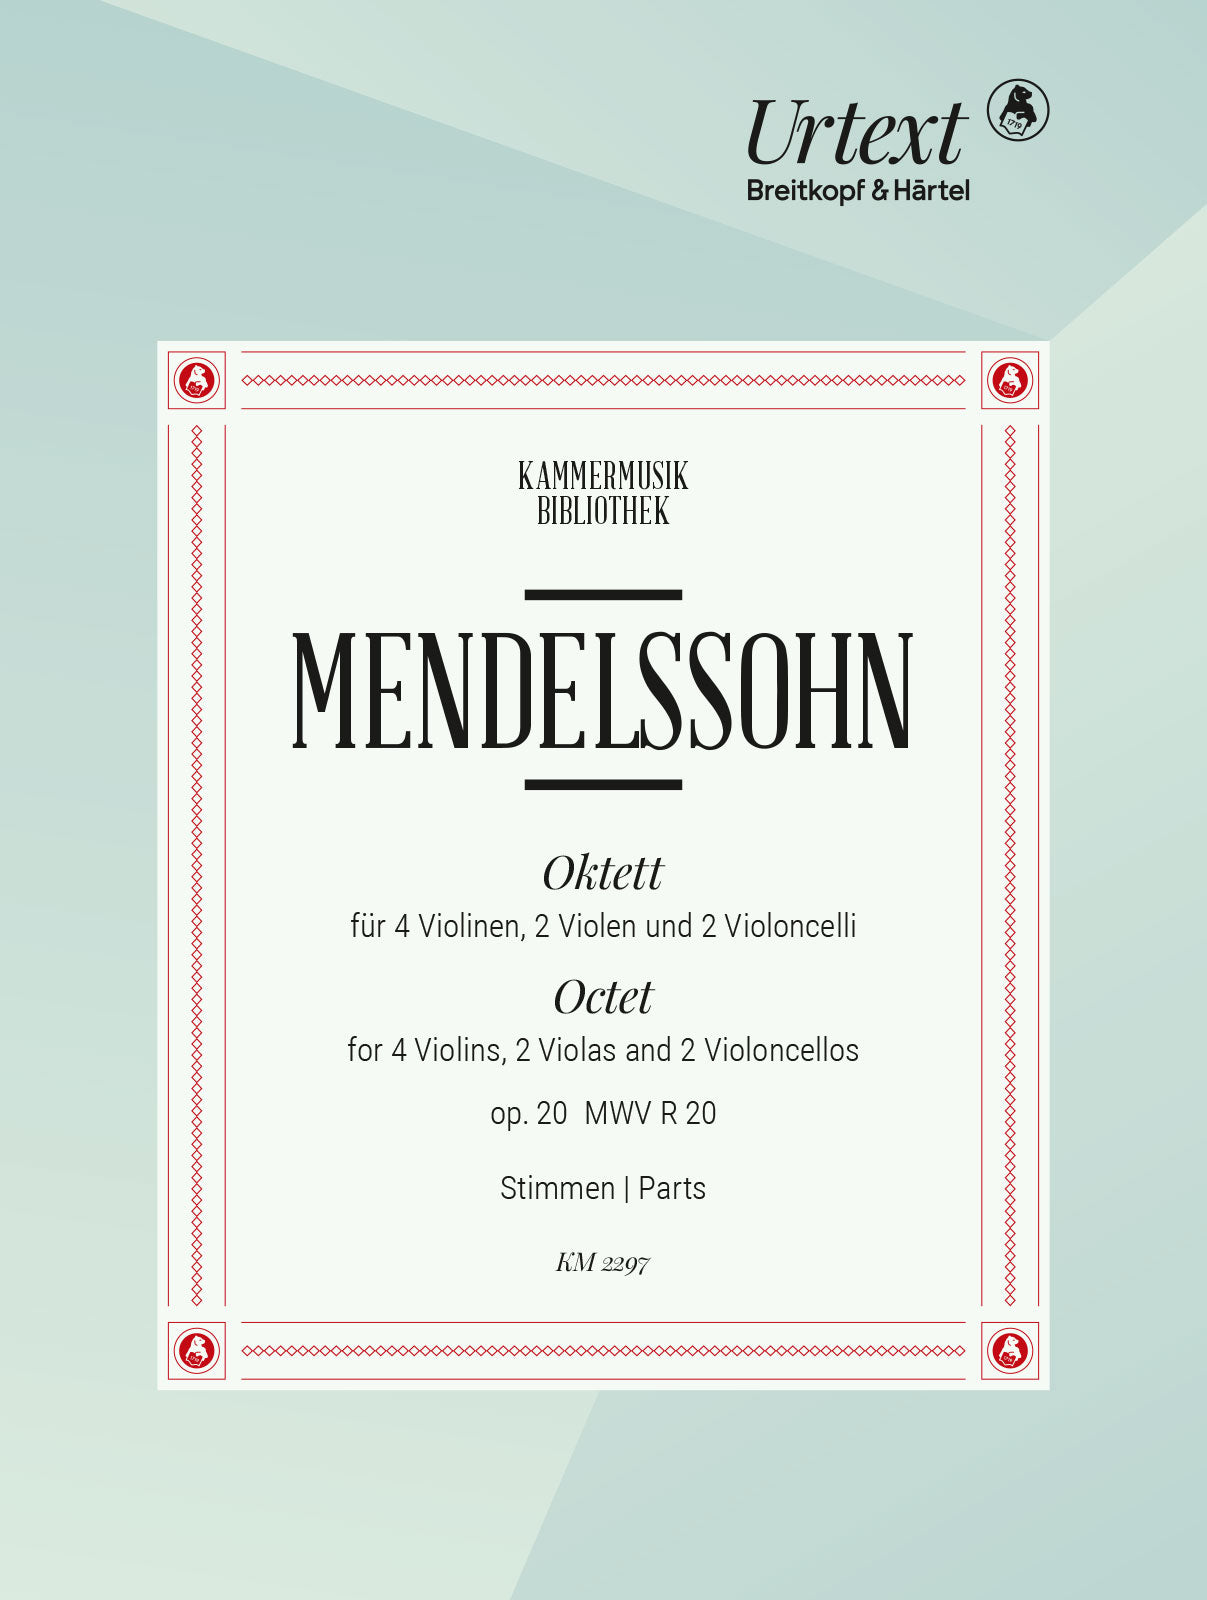 Mendelssohn: String Octet in E-flat Major, Op. 20